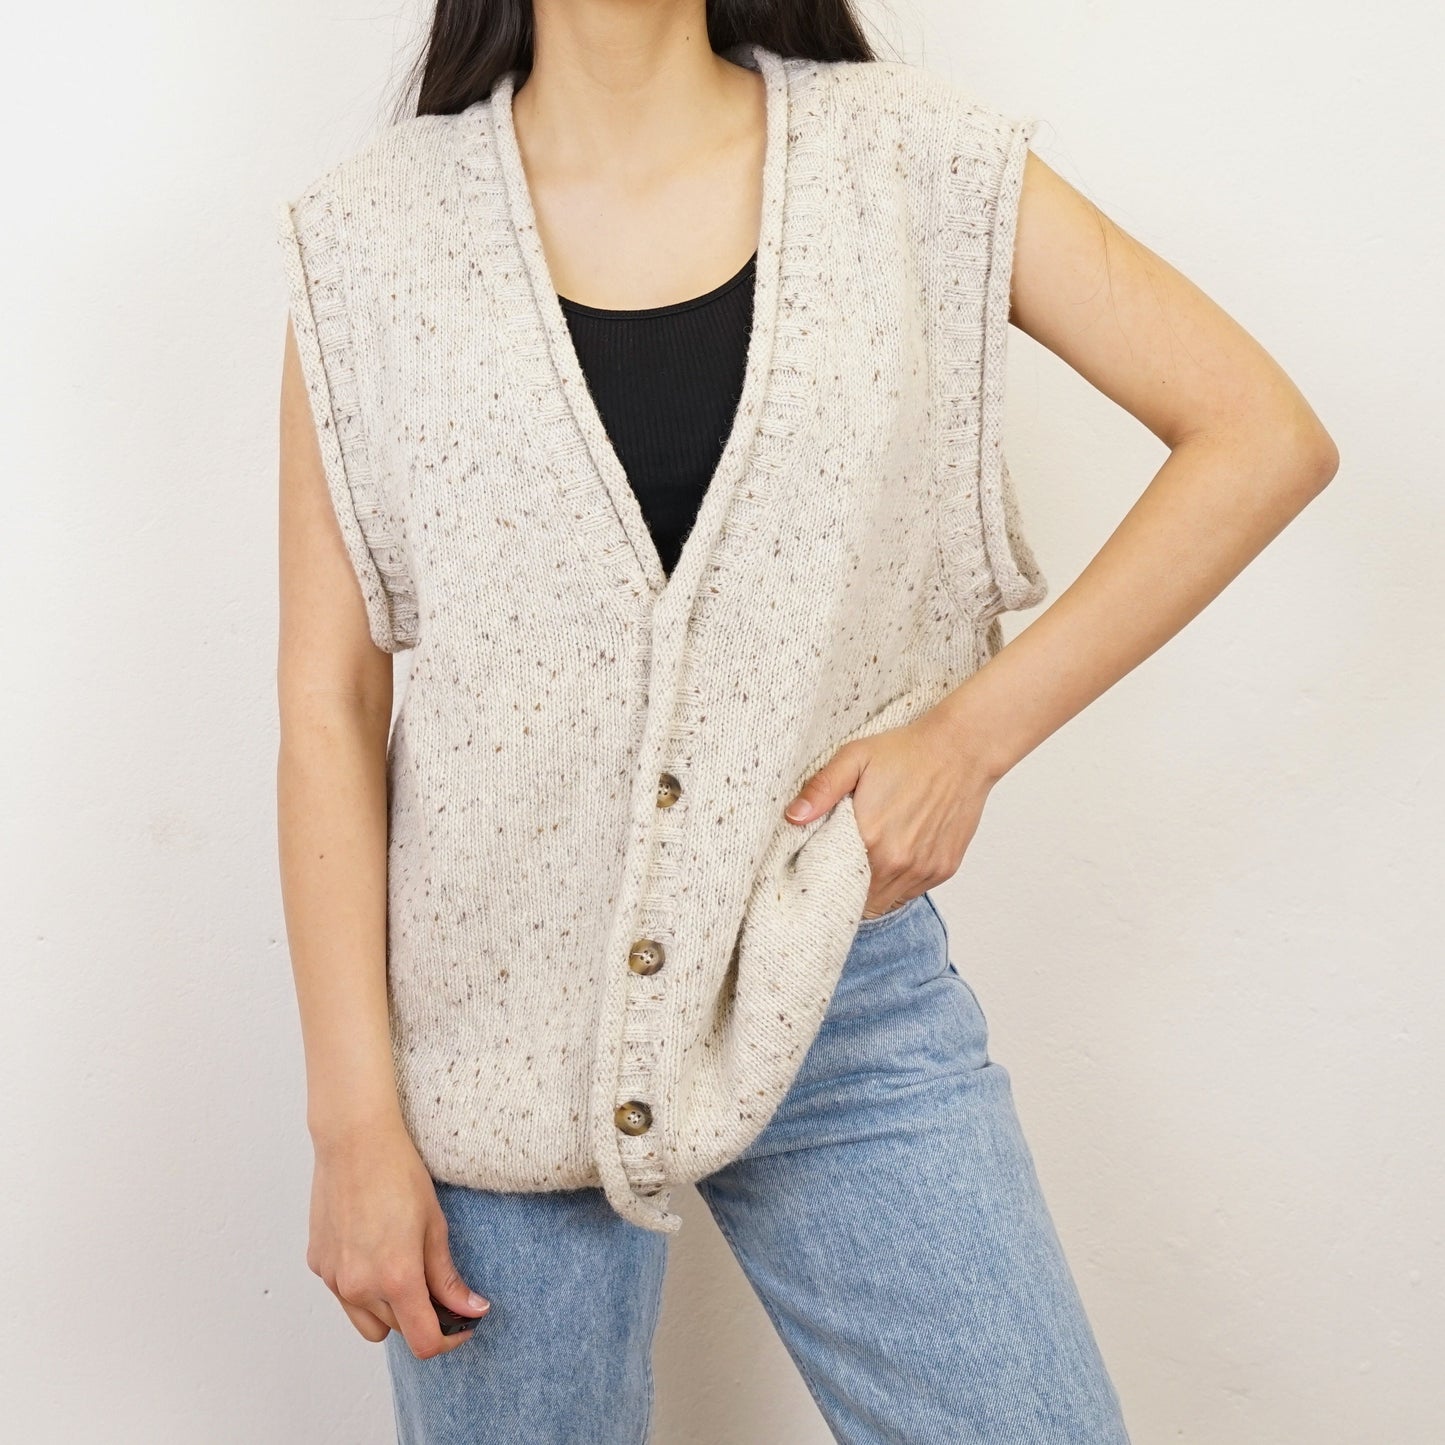 Vintage cream knit Vest Size L unisex